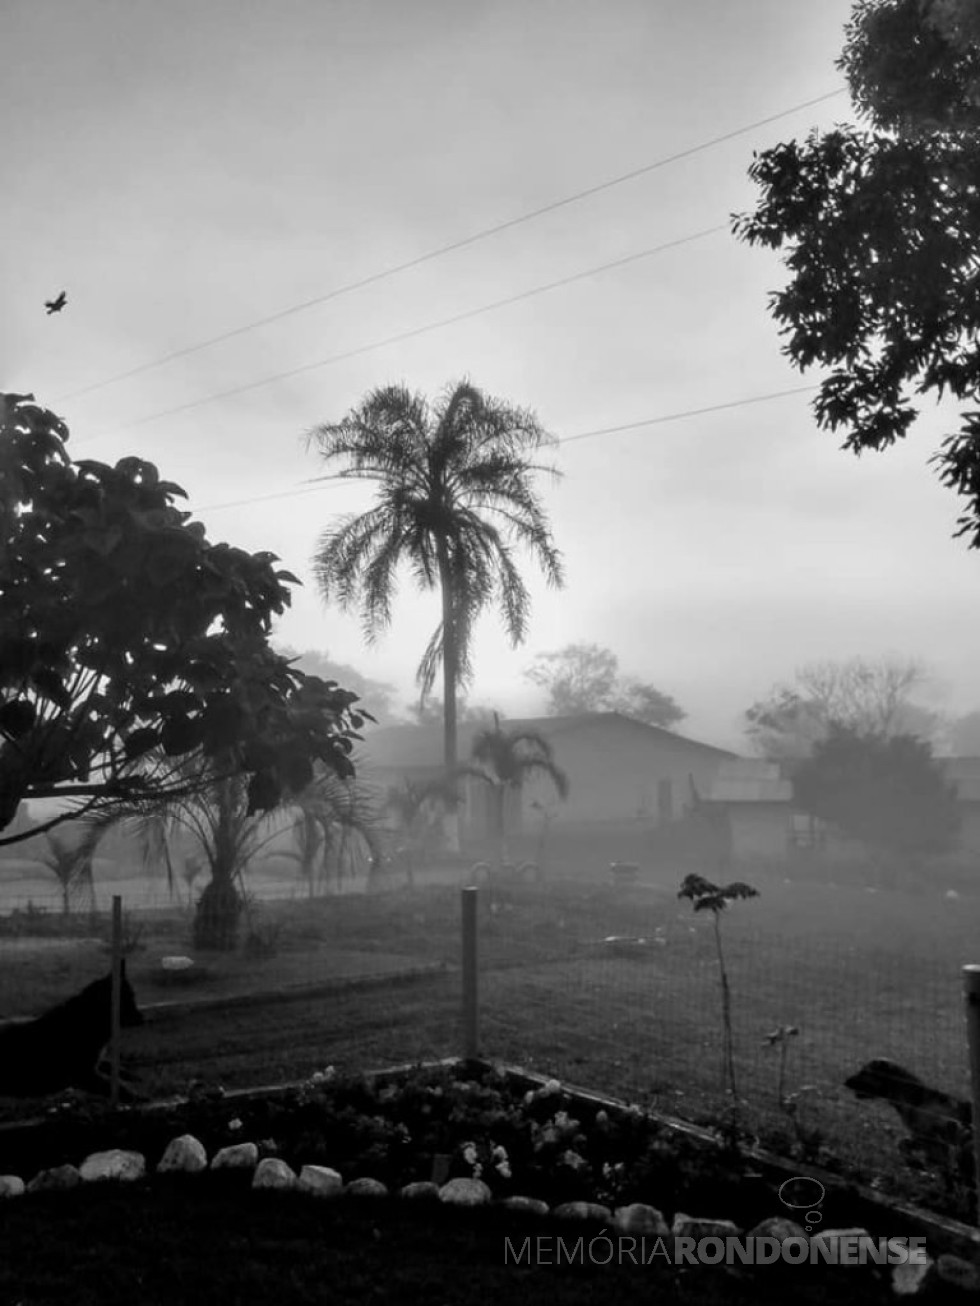 || Neblina no amanhecer em Marechal Cândido Rondon no dia 16 de junho de 2021, na propriedade do casal Roselene Zimmermann e Semildo Laske.
Imagem: Acervo e crédito de Roselene Zimmermann Laske - FOTO 12 -